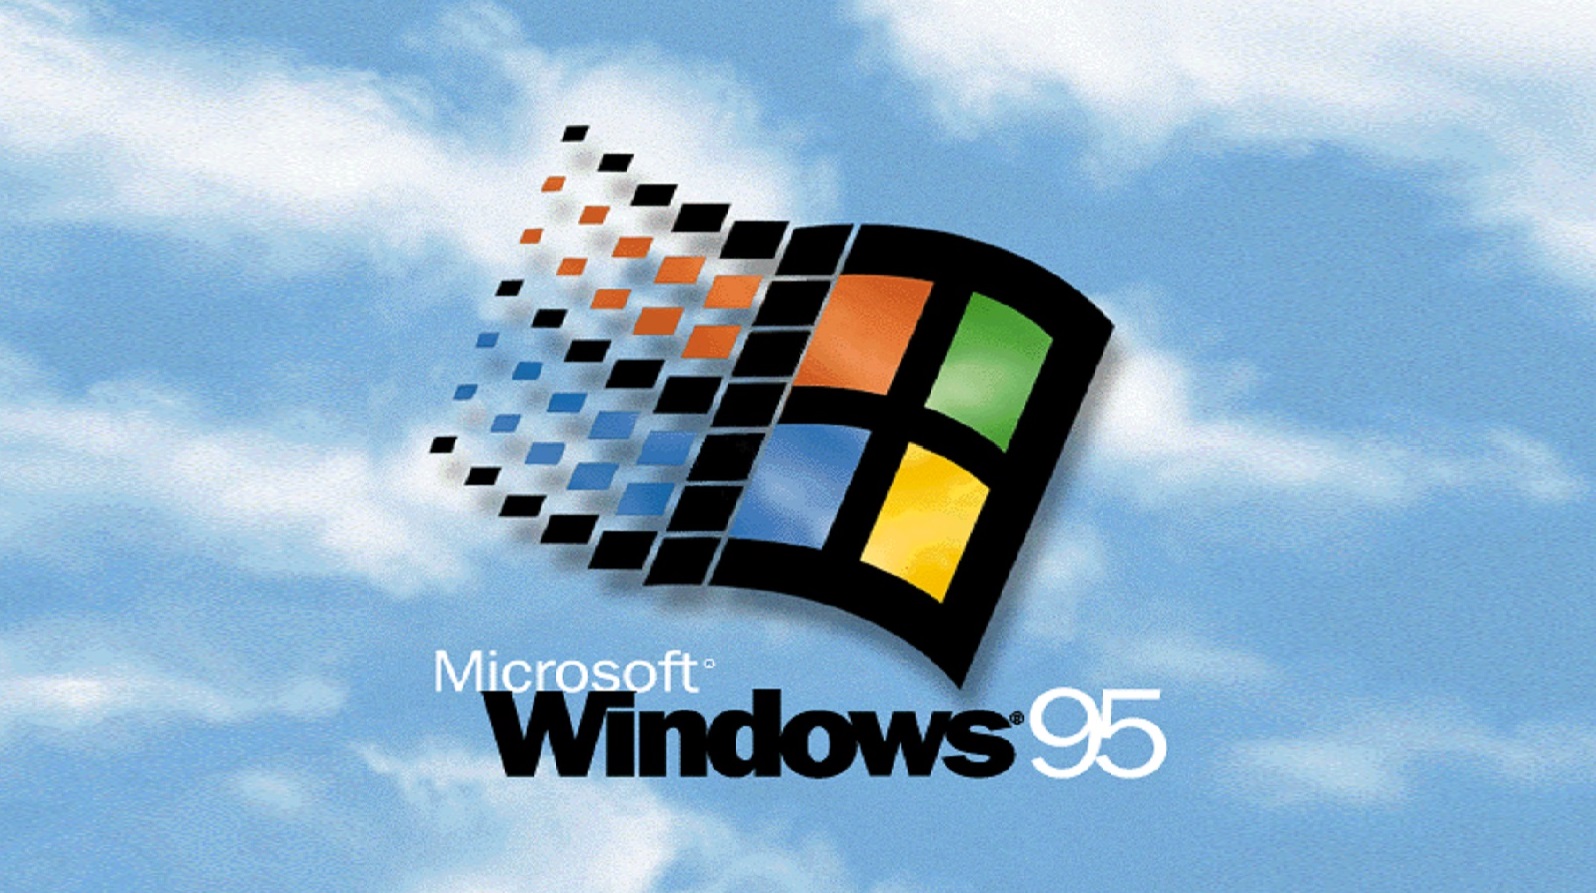 Windows Millenium Iso